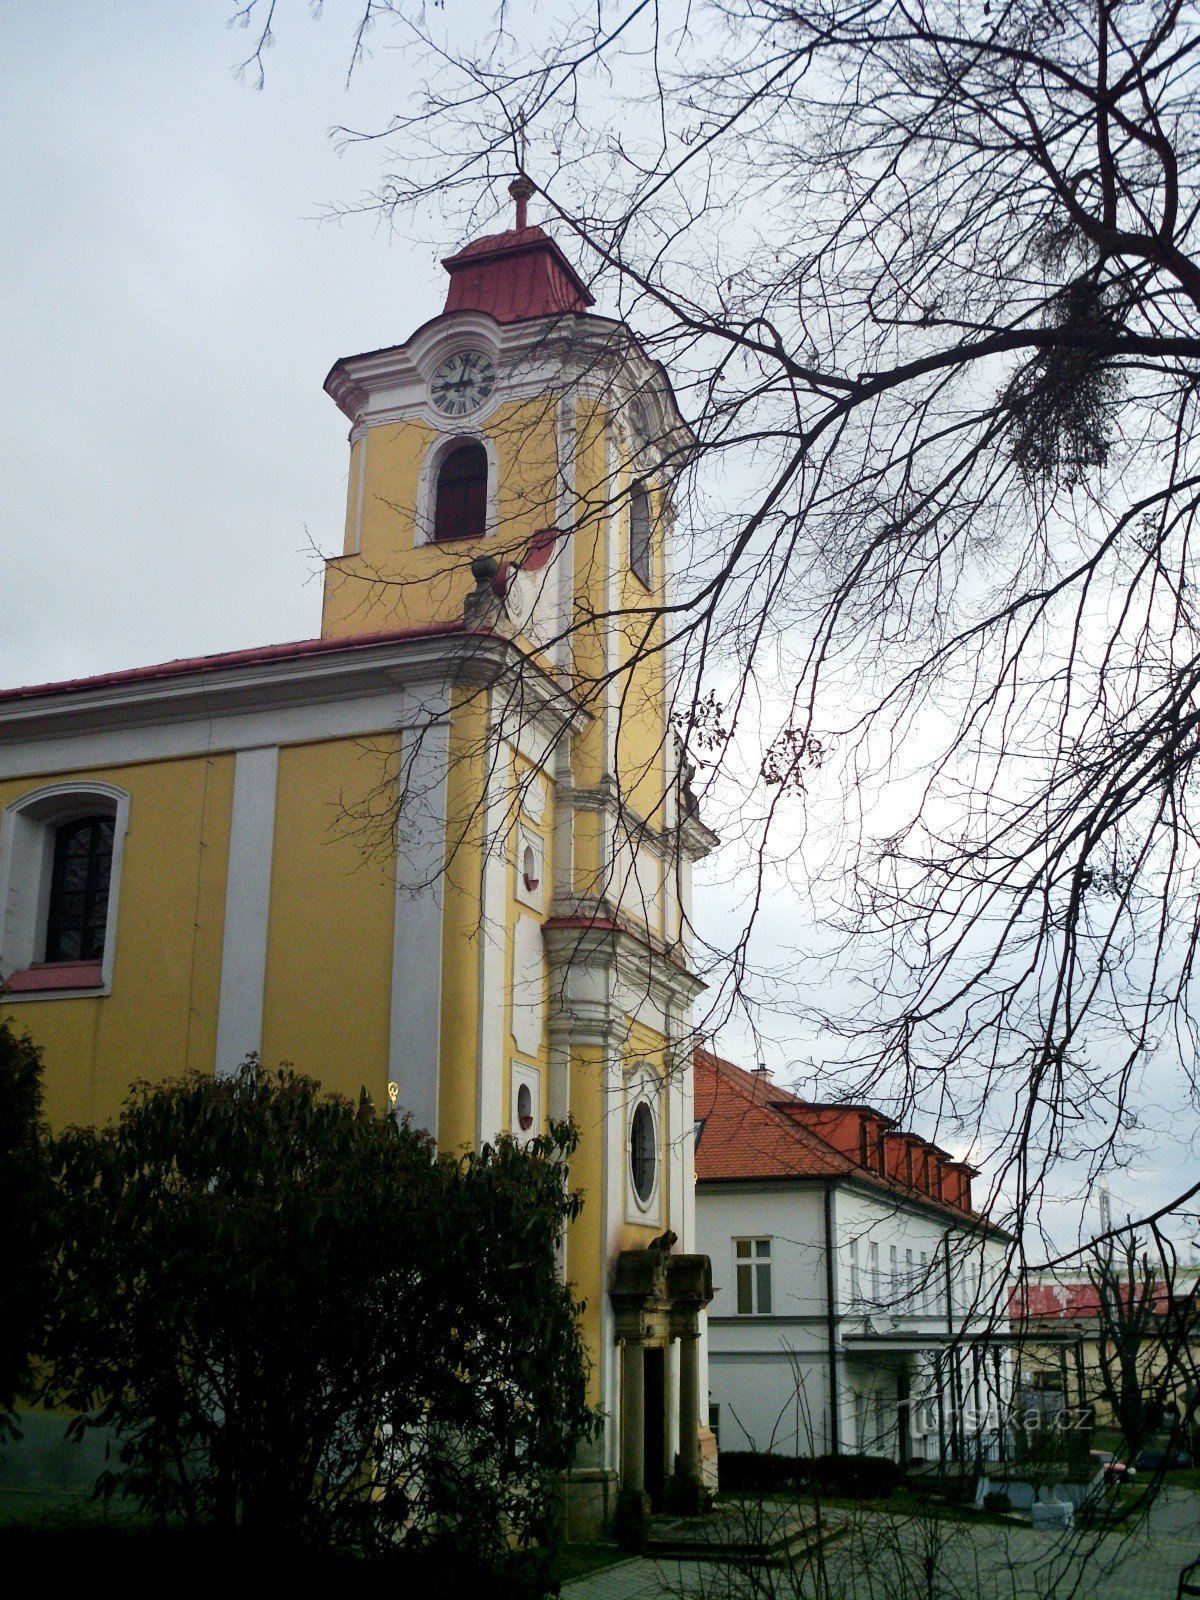 Pohořelice - kyrkan St. Jan Nepomucký